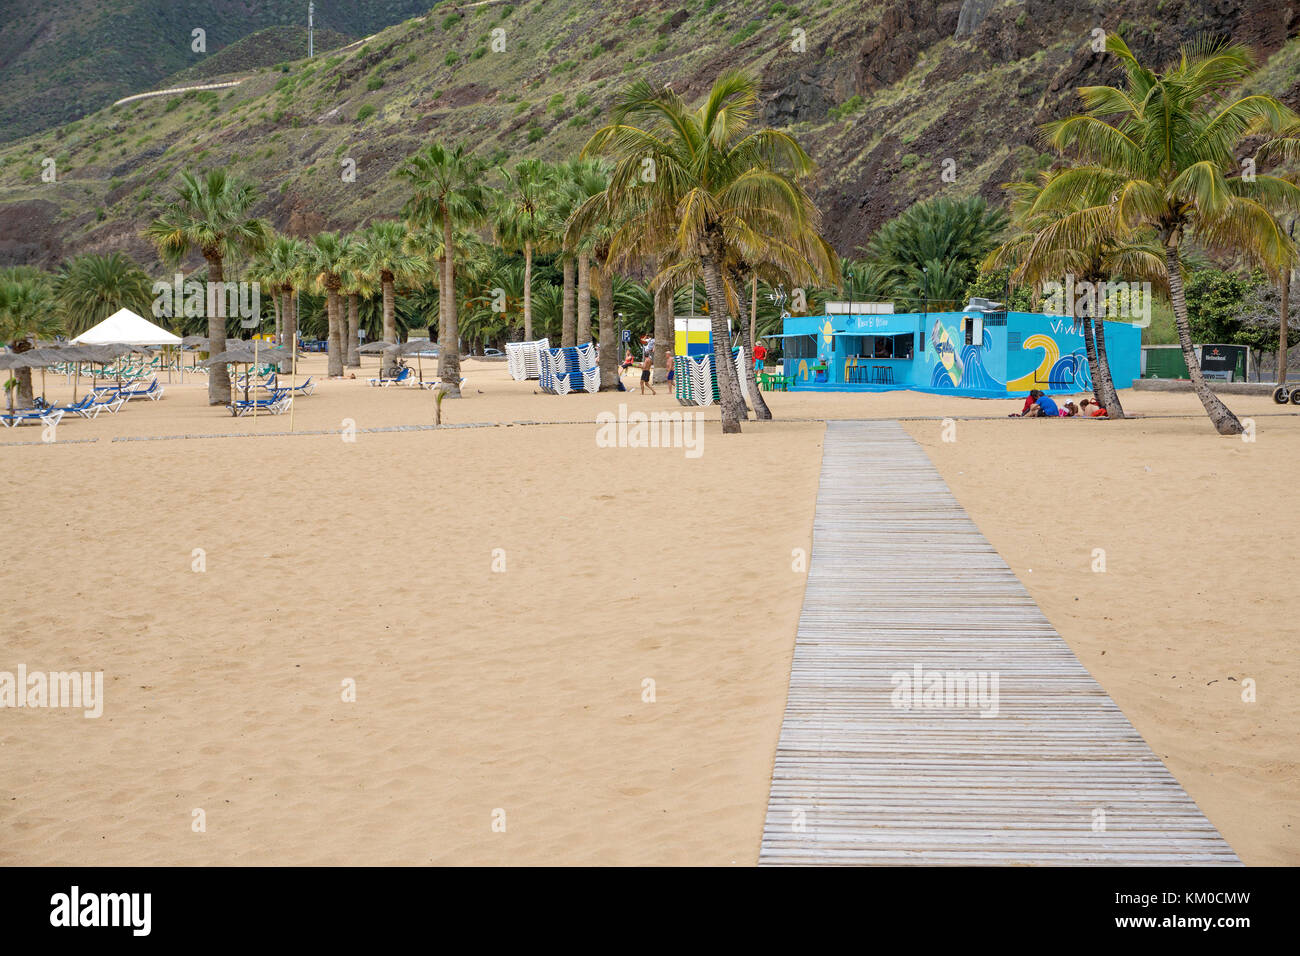 Playa teresitas, plage populaire à San Andres, Tenerife, îles canaries, espagne Banque D'Images